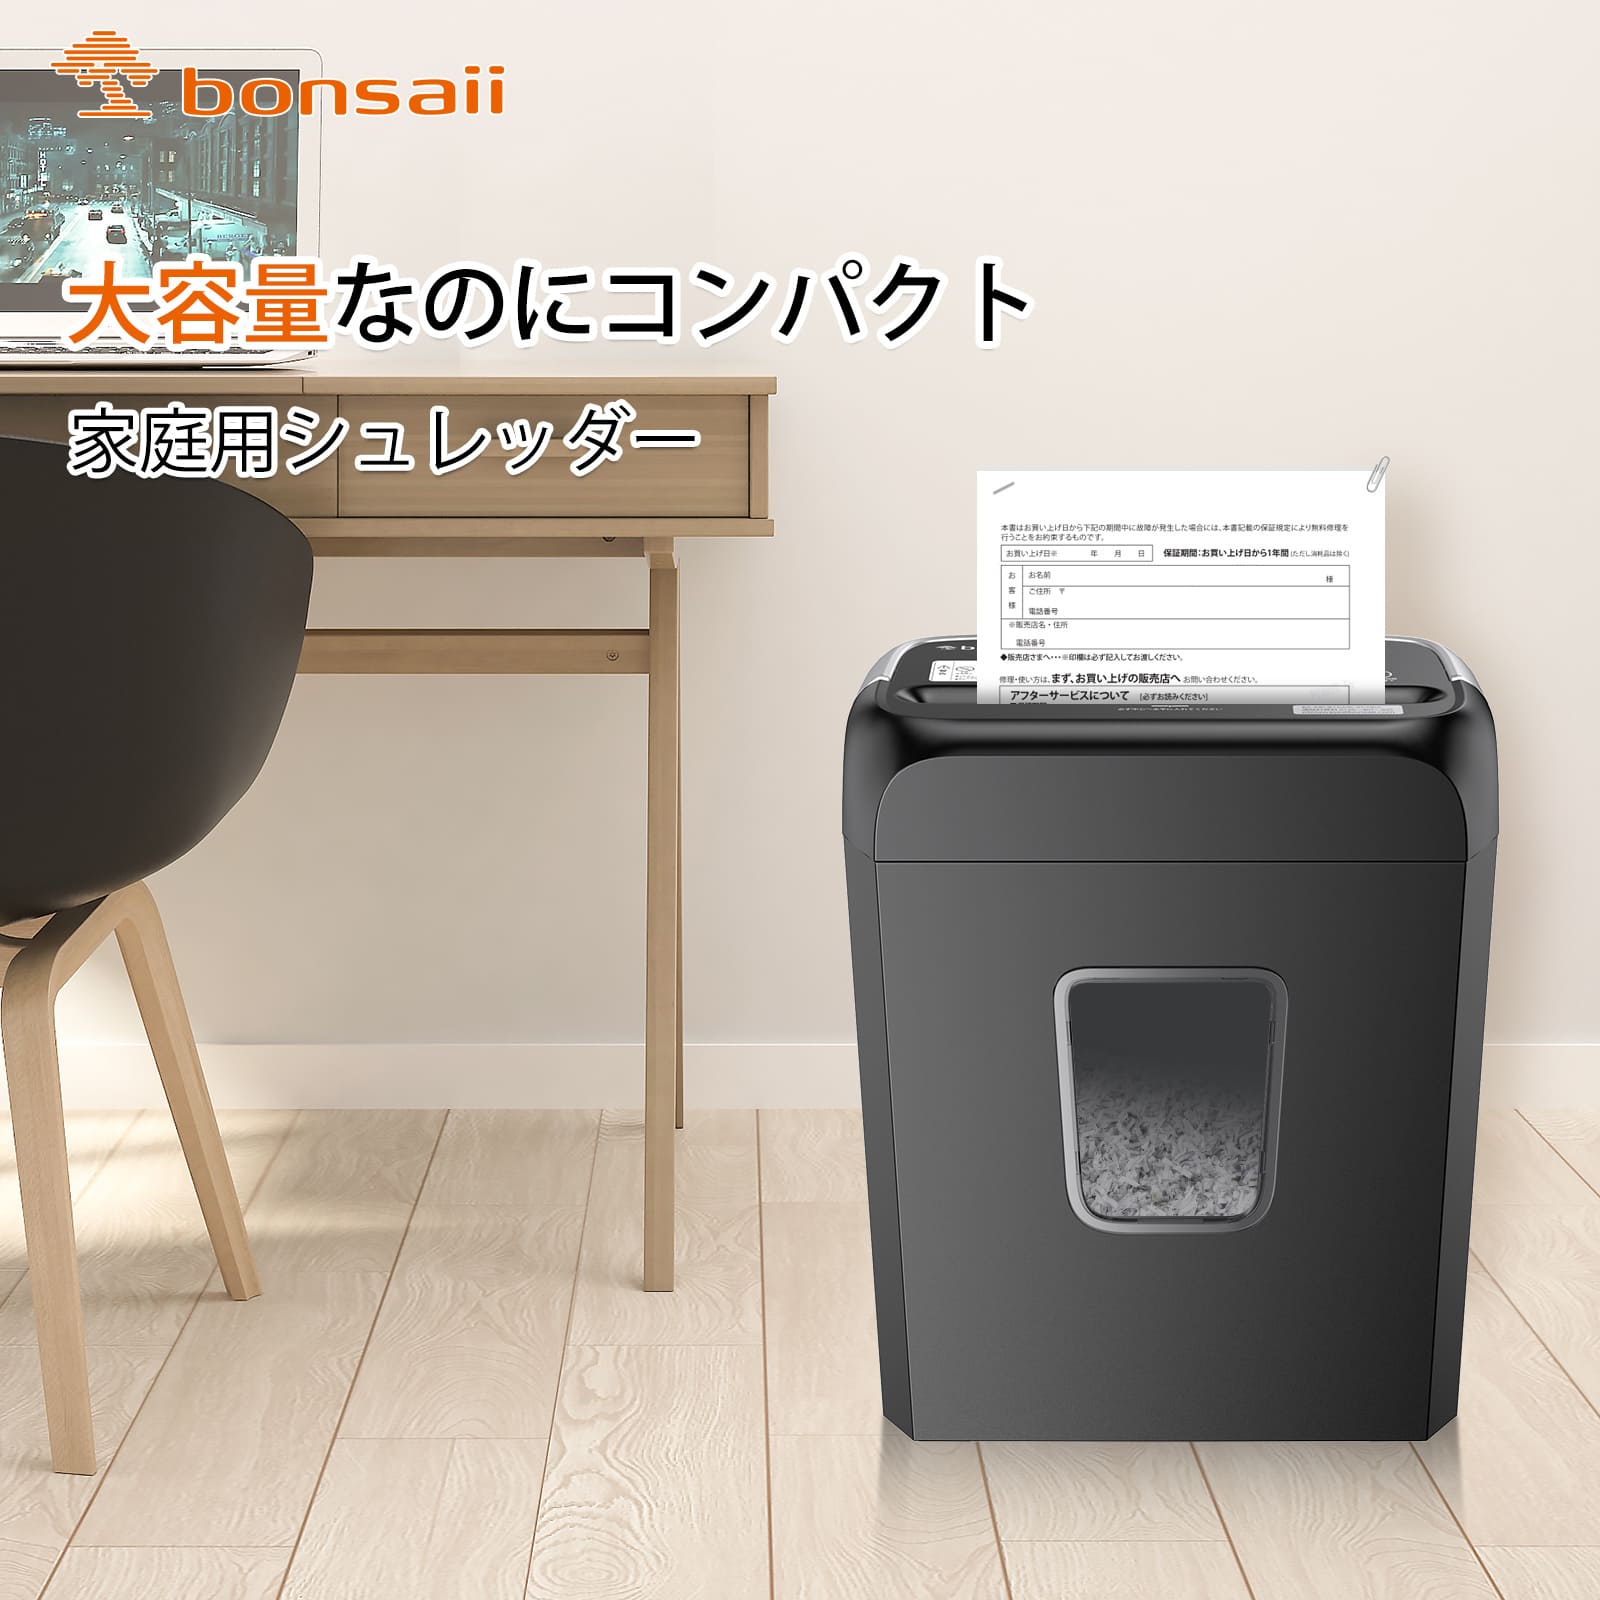 Bonsaii シュレッダー 電動 家庭用 軽量 ハンドルアップ式 5枚同時細断